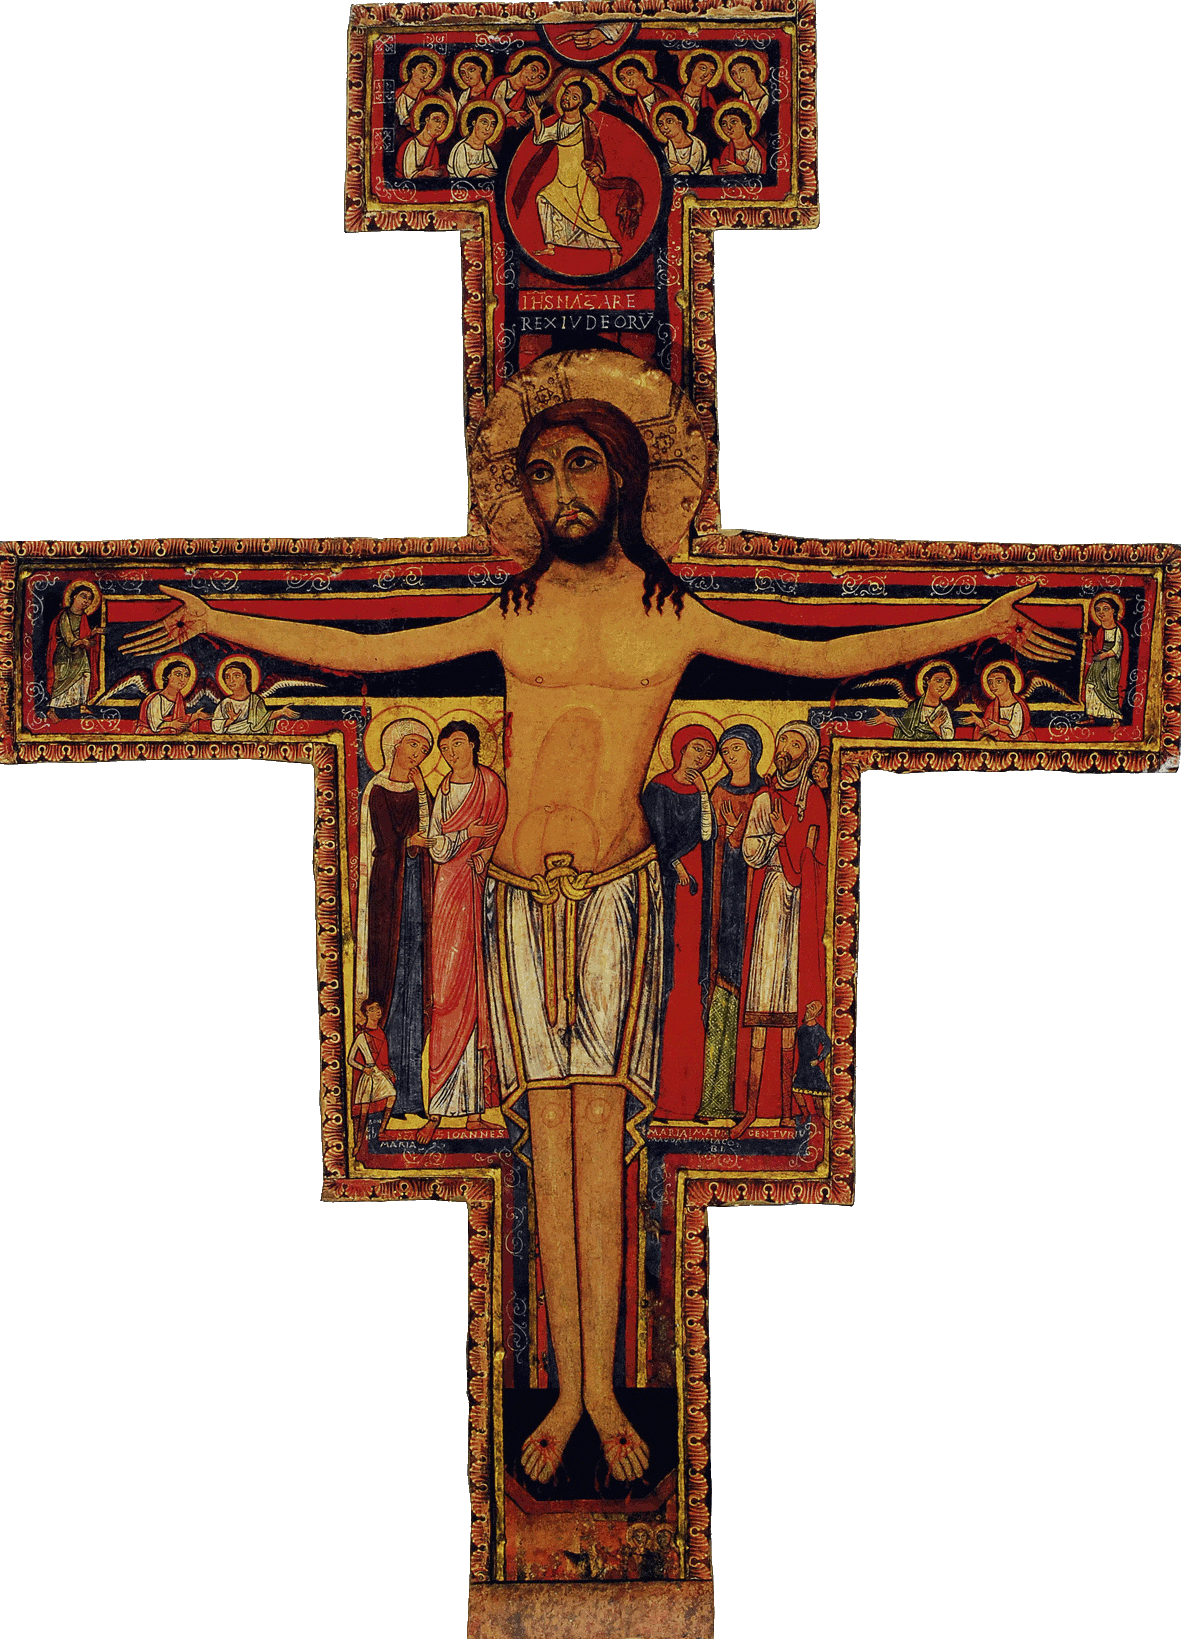 Das Kreuz von San Damiano